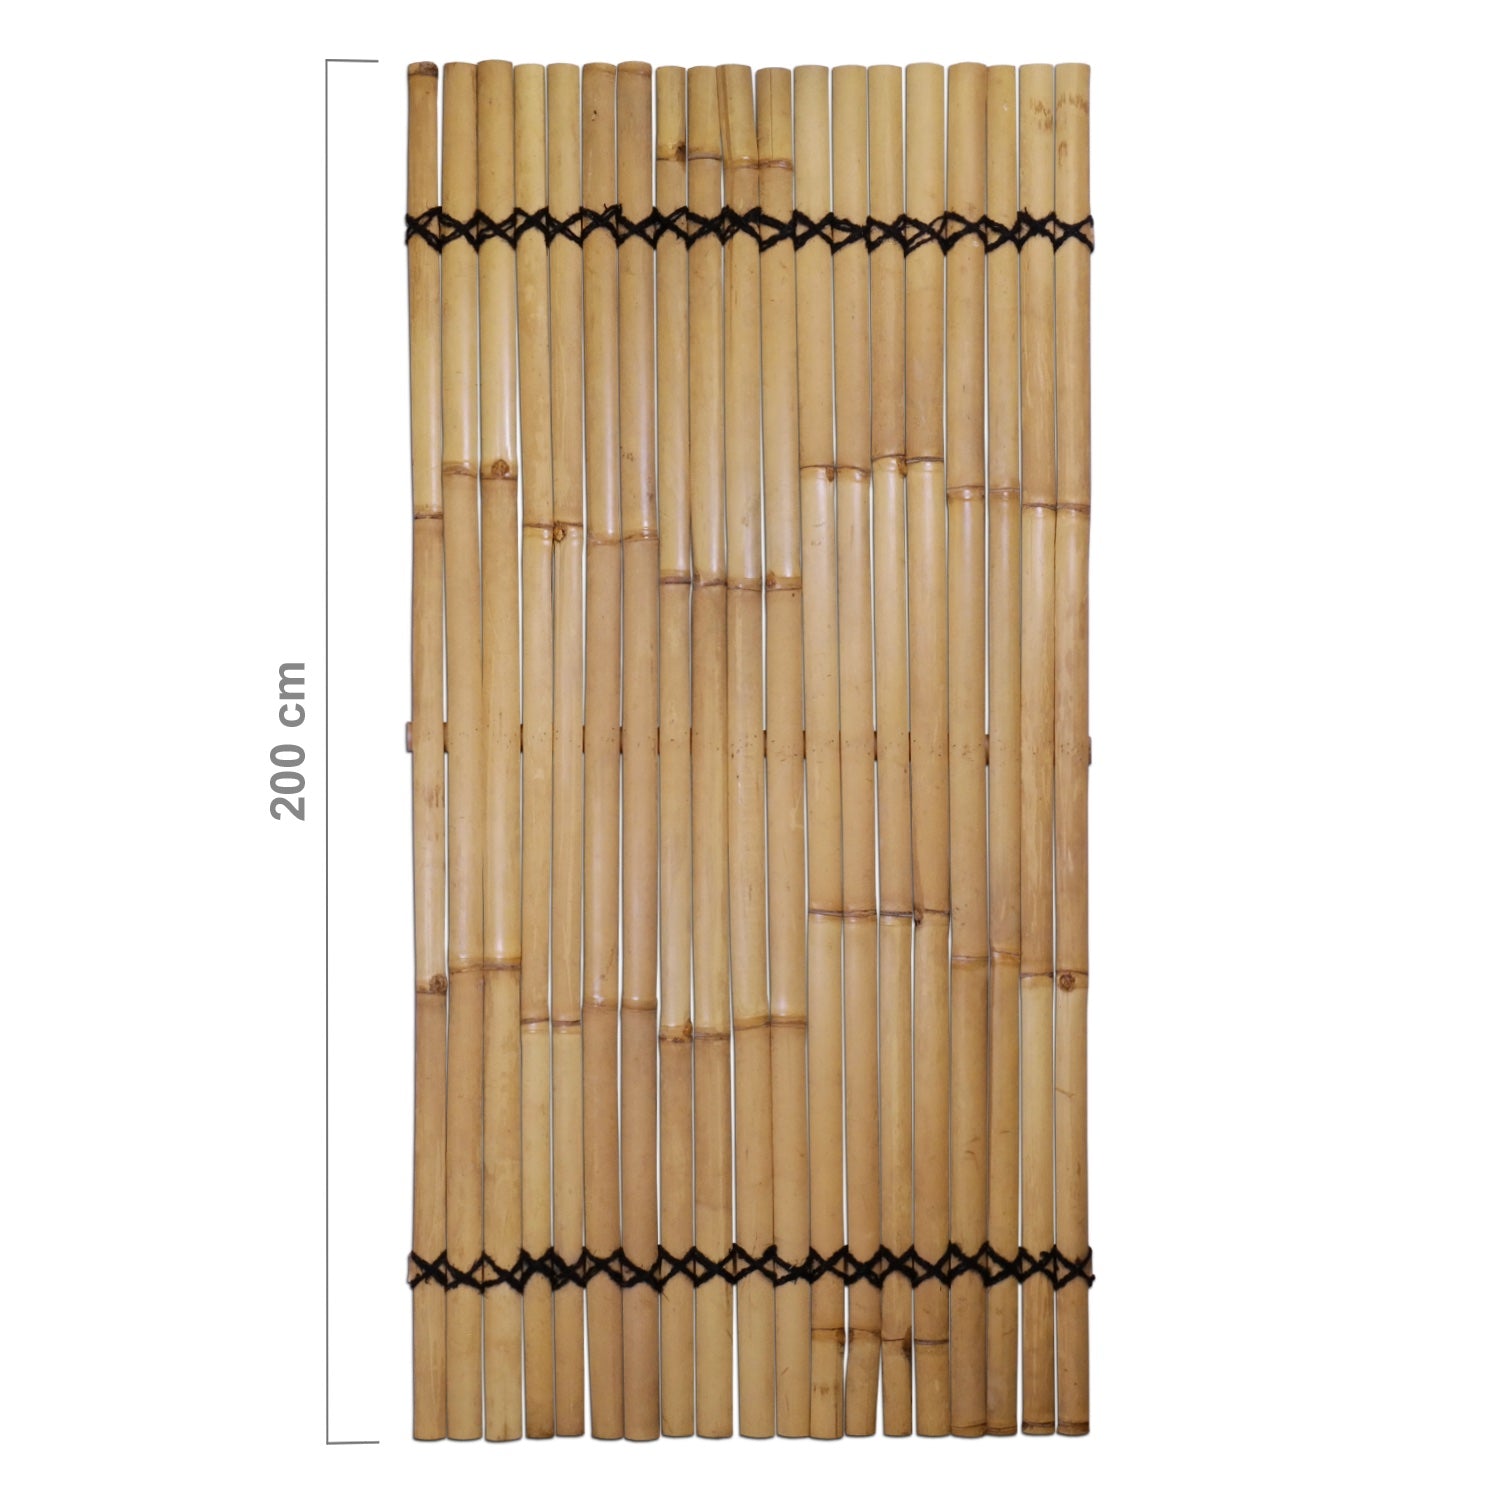 Bambus-Zaun Latten Natur